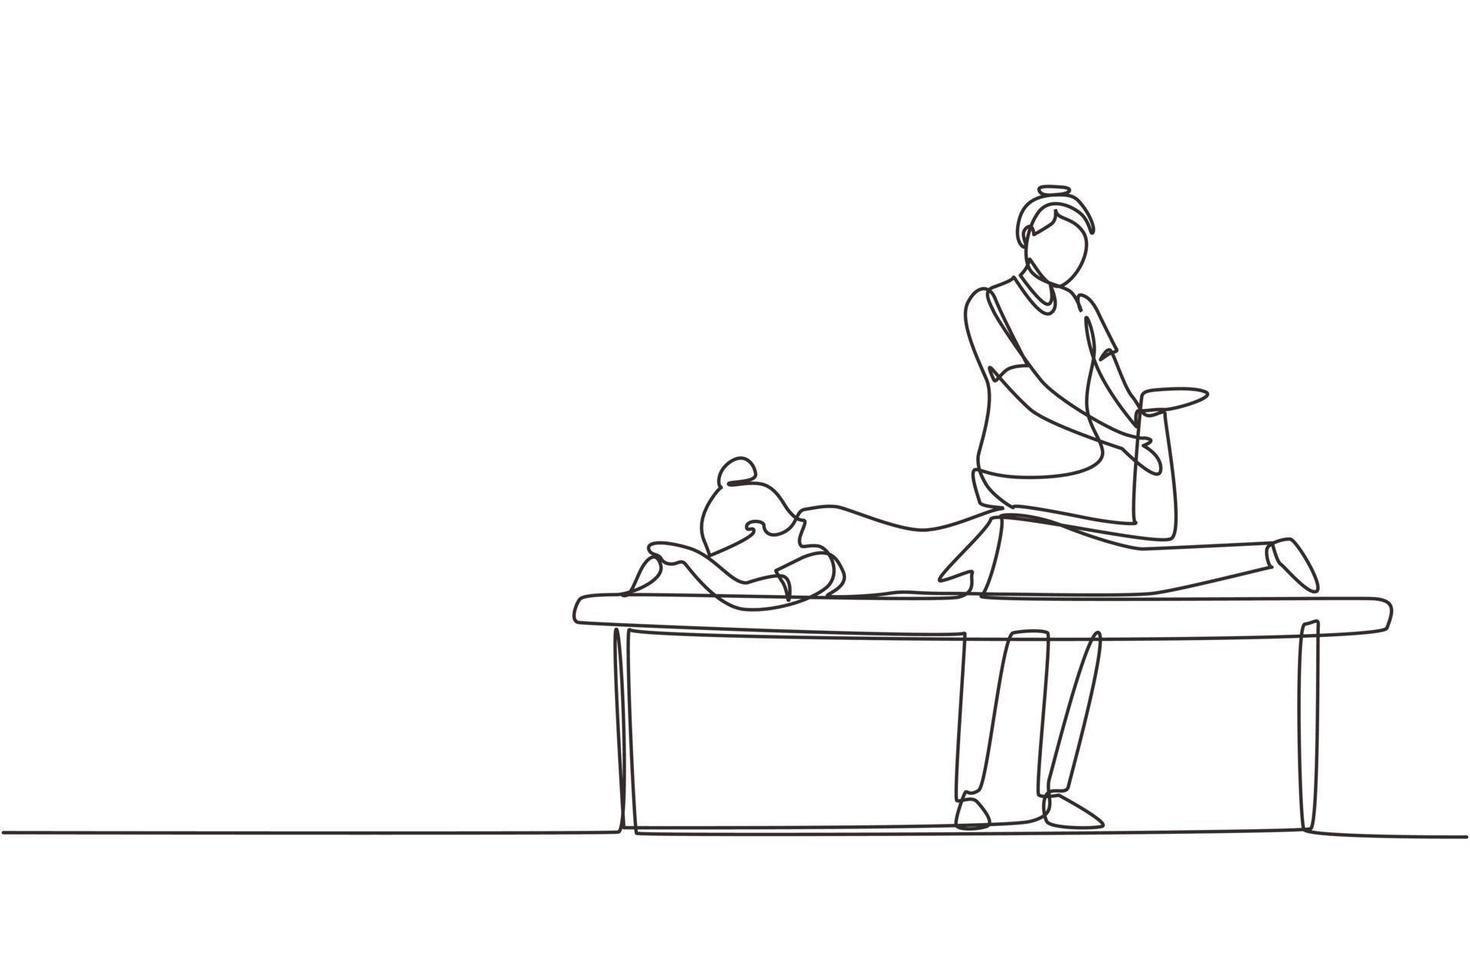 assistência de reabilitação de fisioterapia de desenho contínuo de uma linha. paciente de mulher bonita deitada no terapeuta de mesa de massagem fazendo tratamento curativo massageando o pé ferido. vetor de design de desenho de linha única